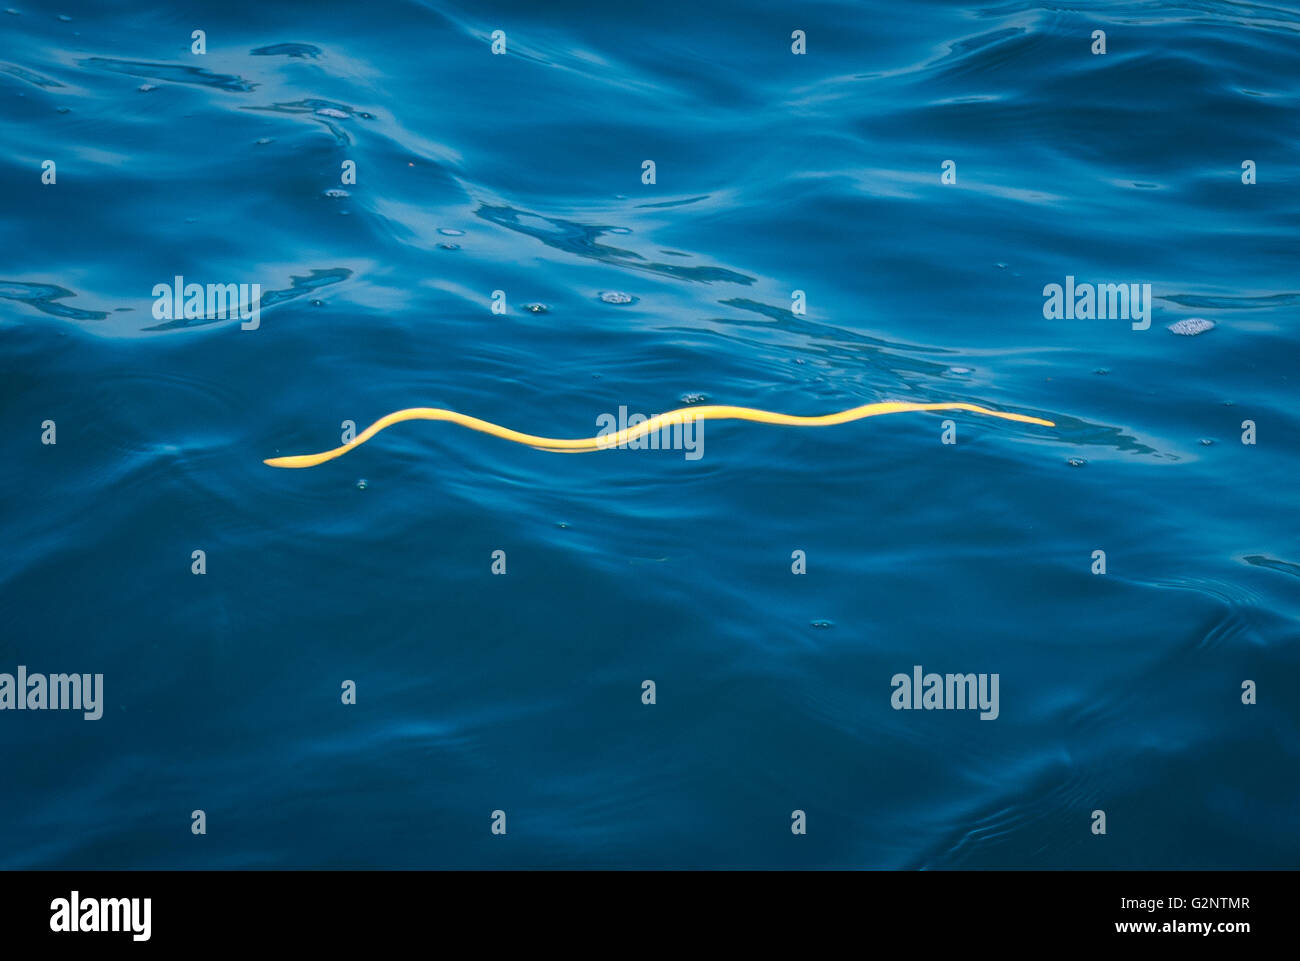 GULFO DULCE, COSTA RICA - Amarillo-curva, serpiente de mar nadando en la superficie del agua en el gulfo Dulce. El veneno tóxico. Pelamis platura Foto de stock